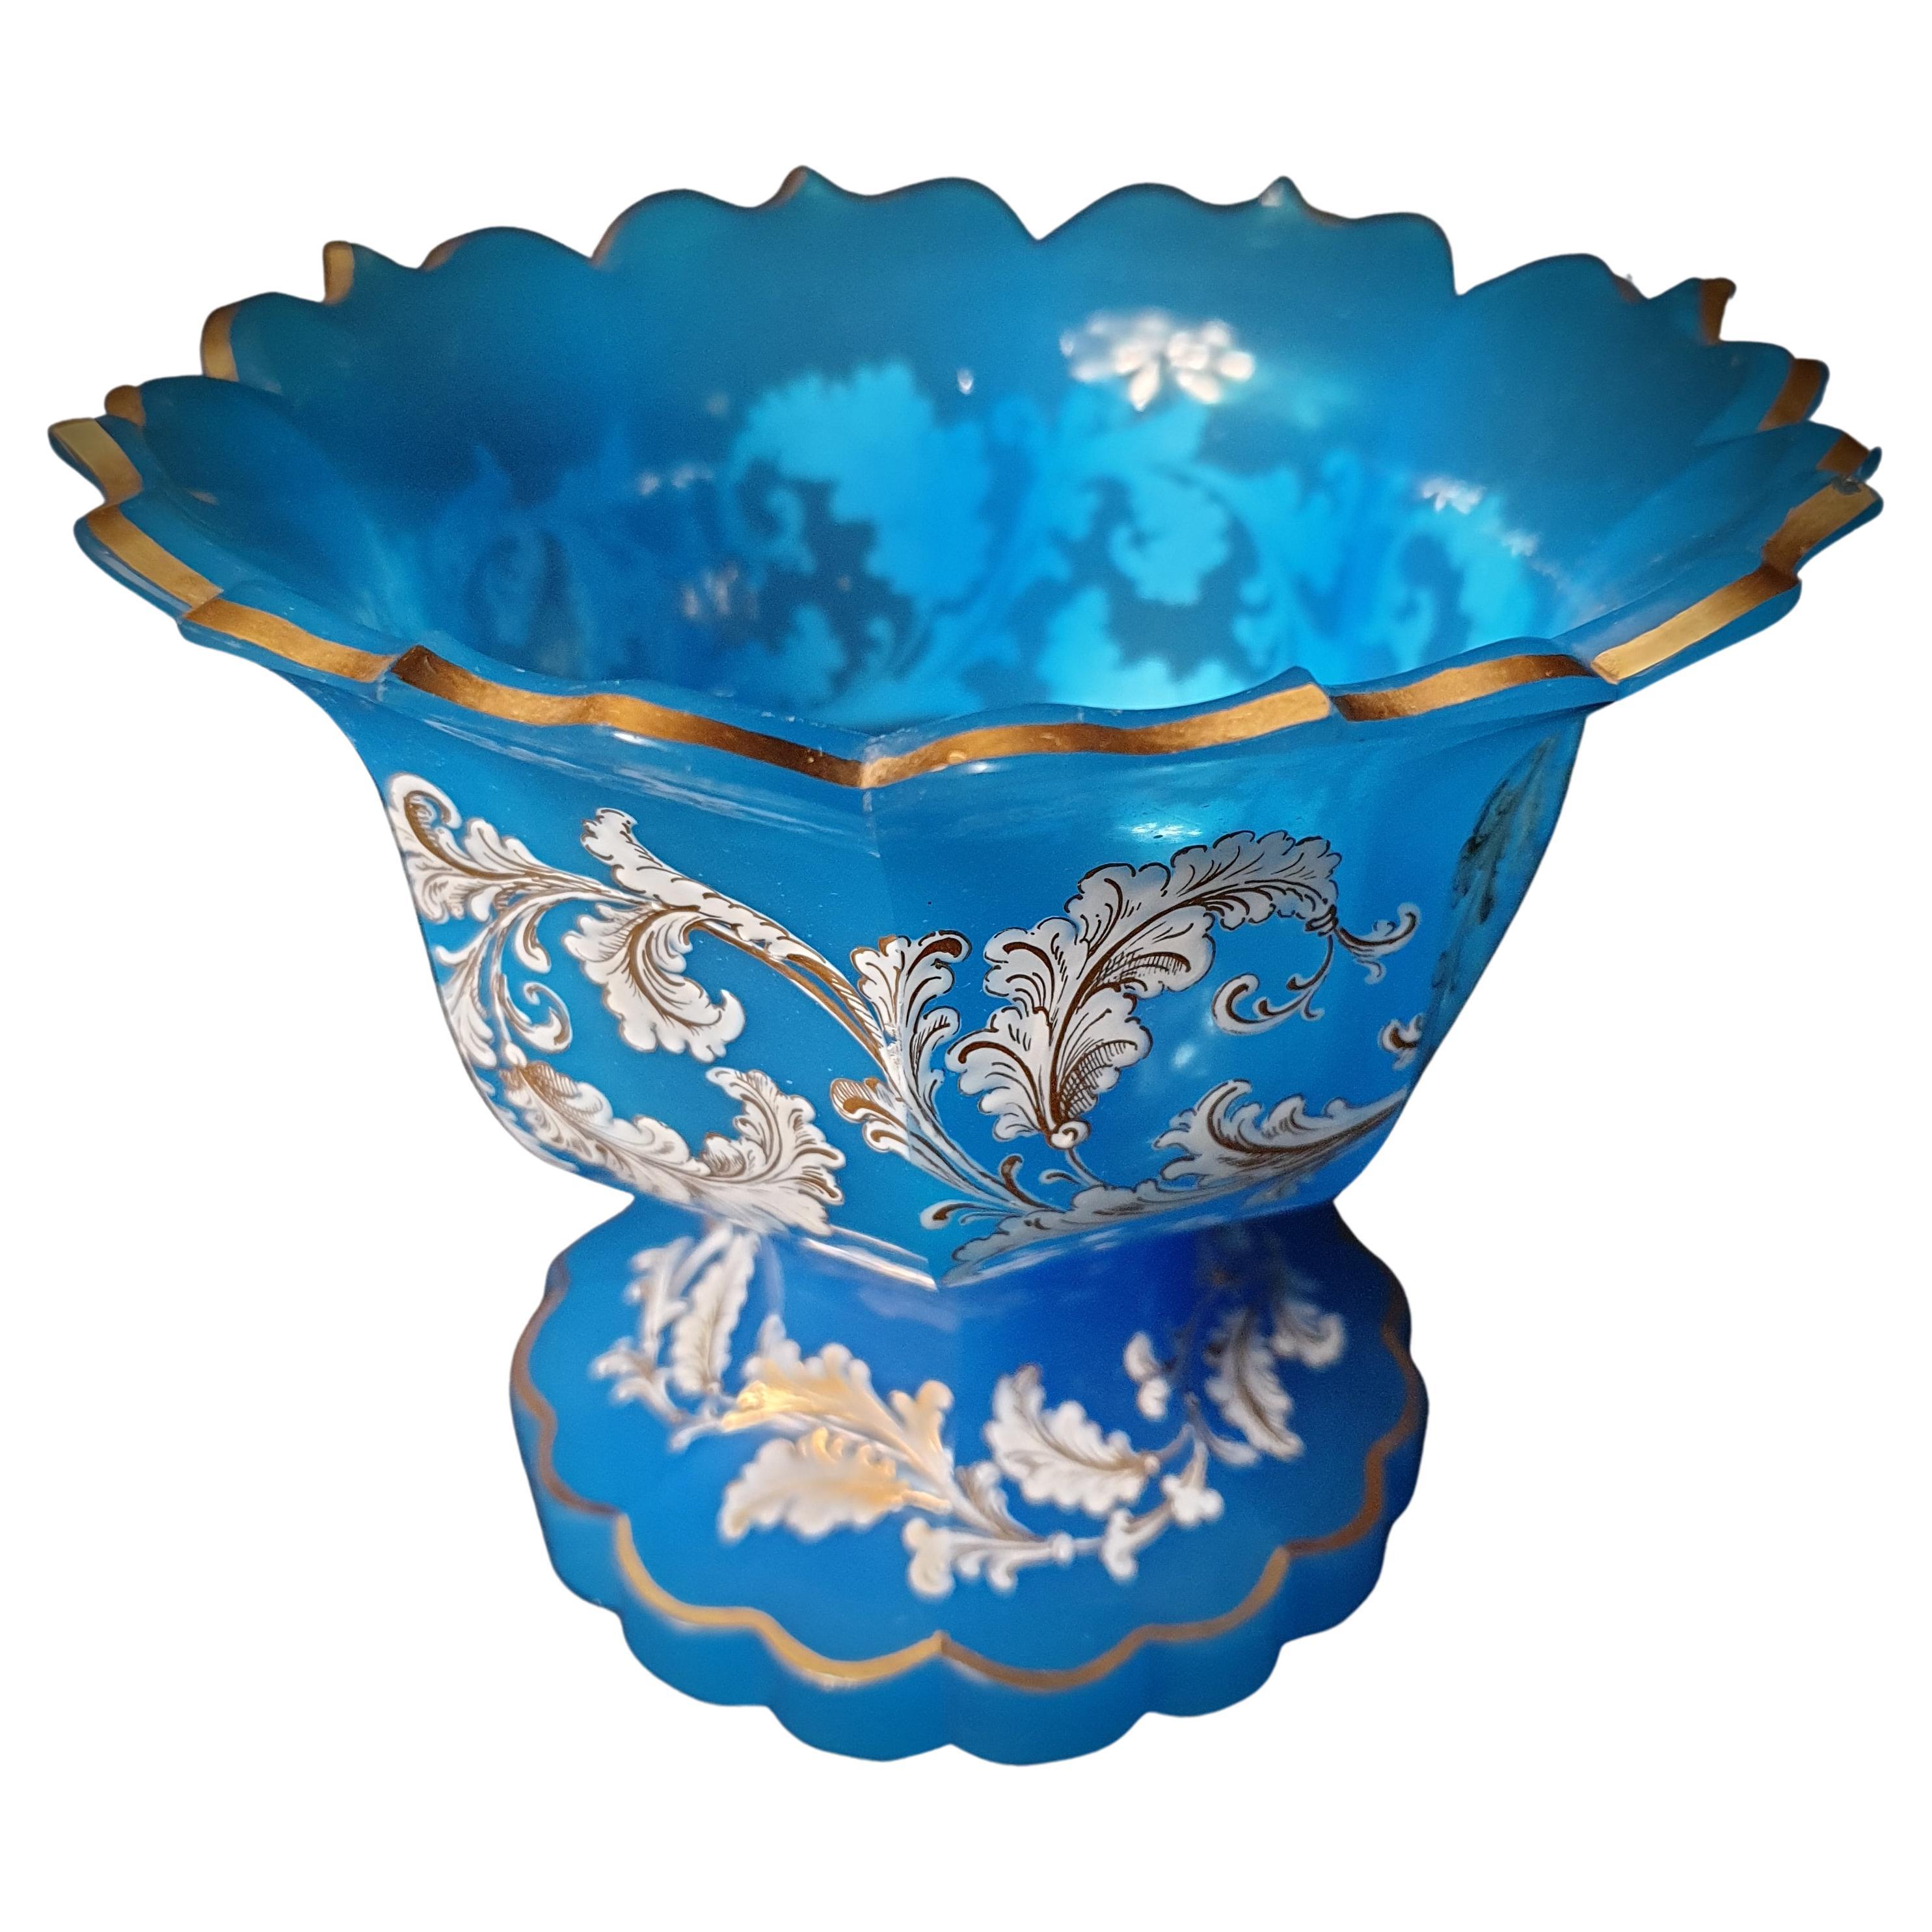 Plat de service en verre opalin bleu moulé taillé, en forme de fleur, doré et peint